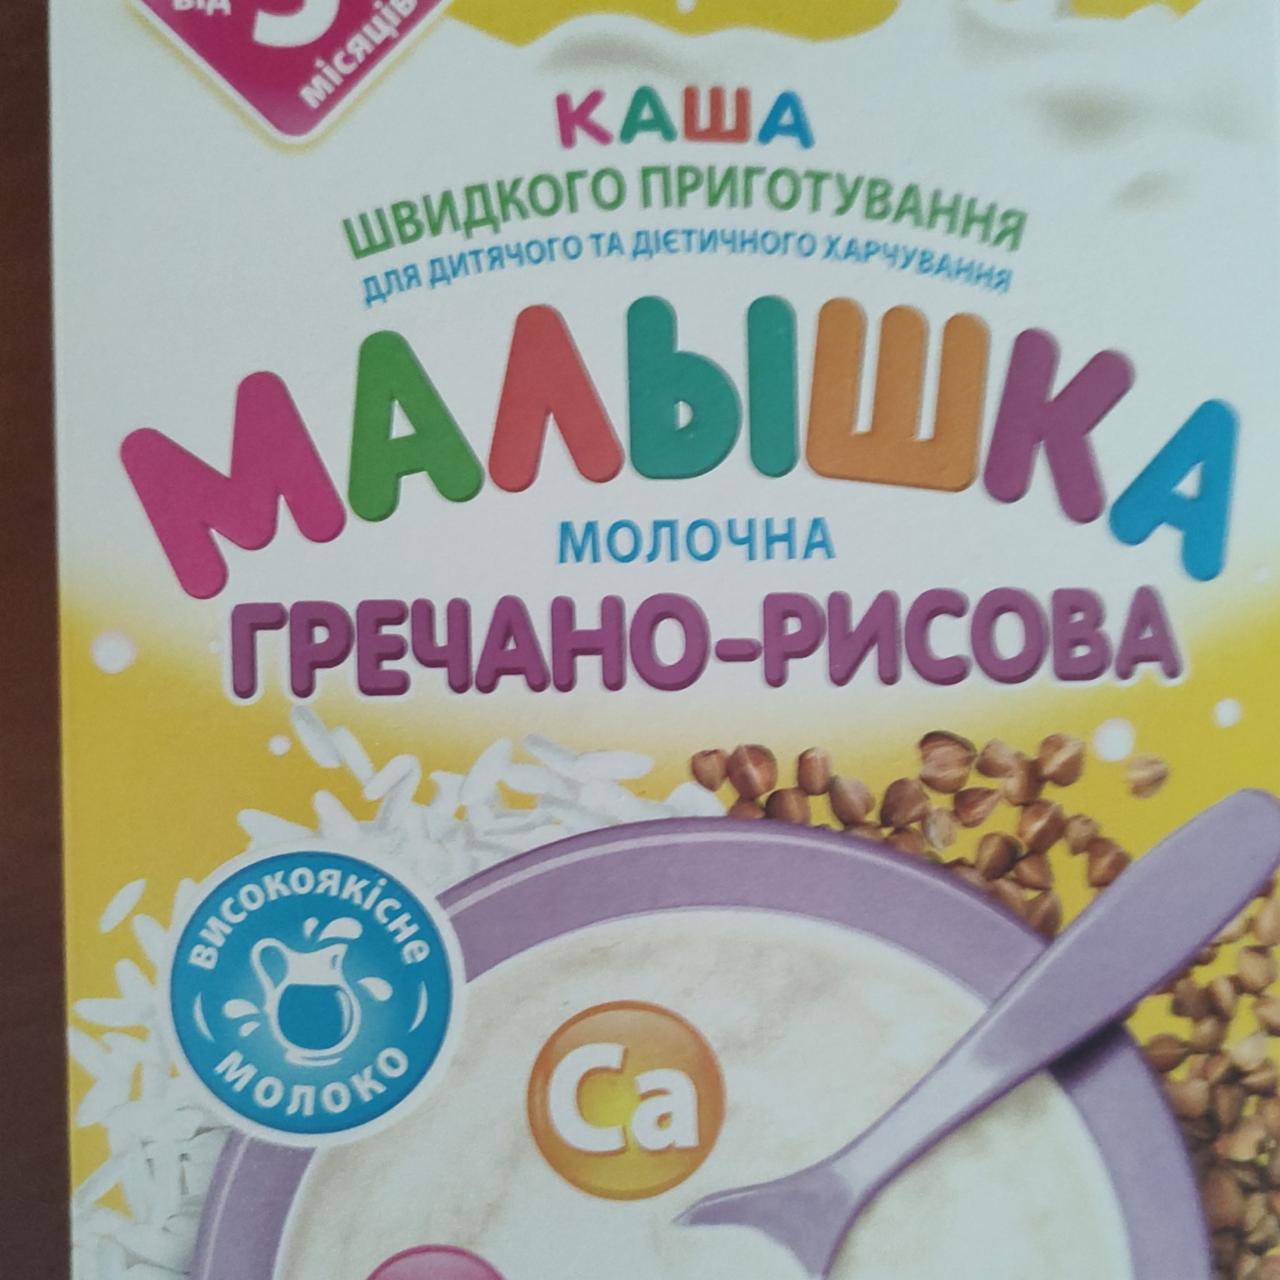 Фото - Каша молочная для детей Гречнево-рисовая Малышка